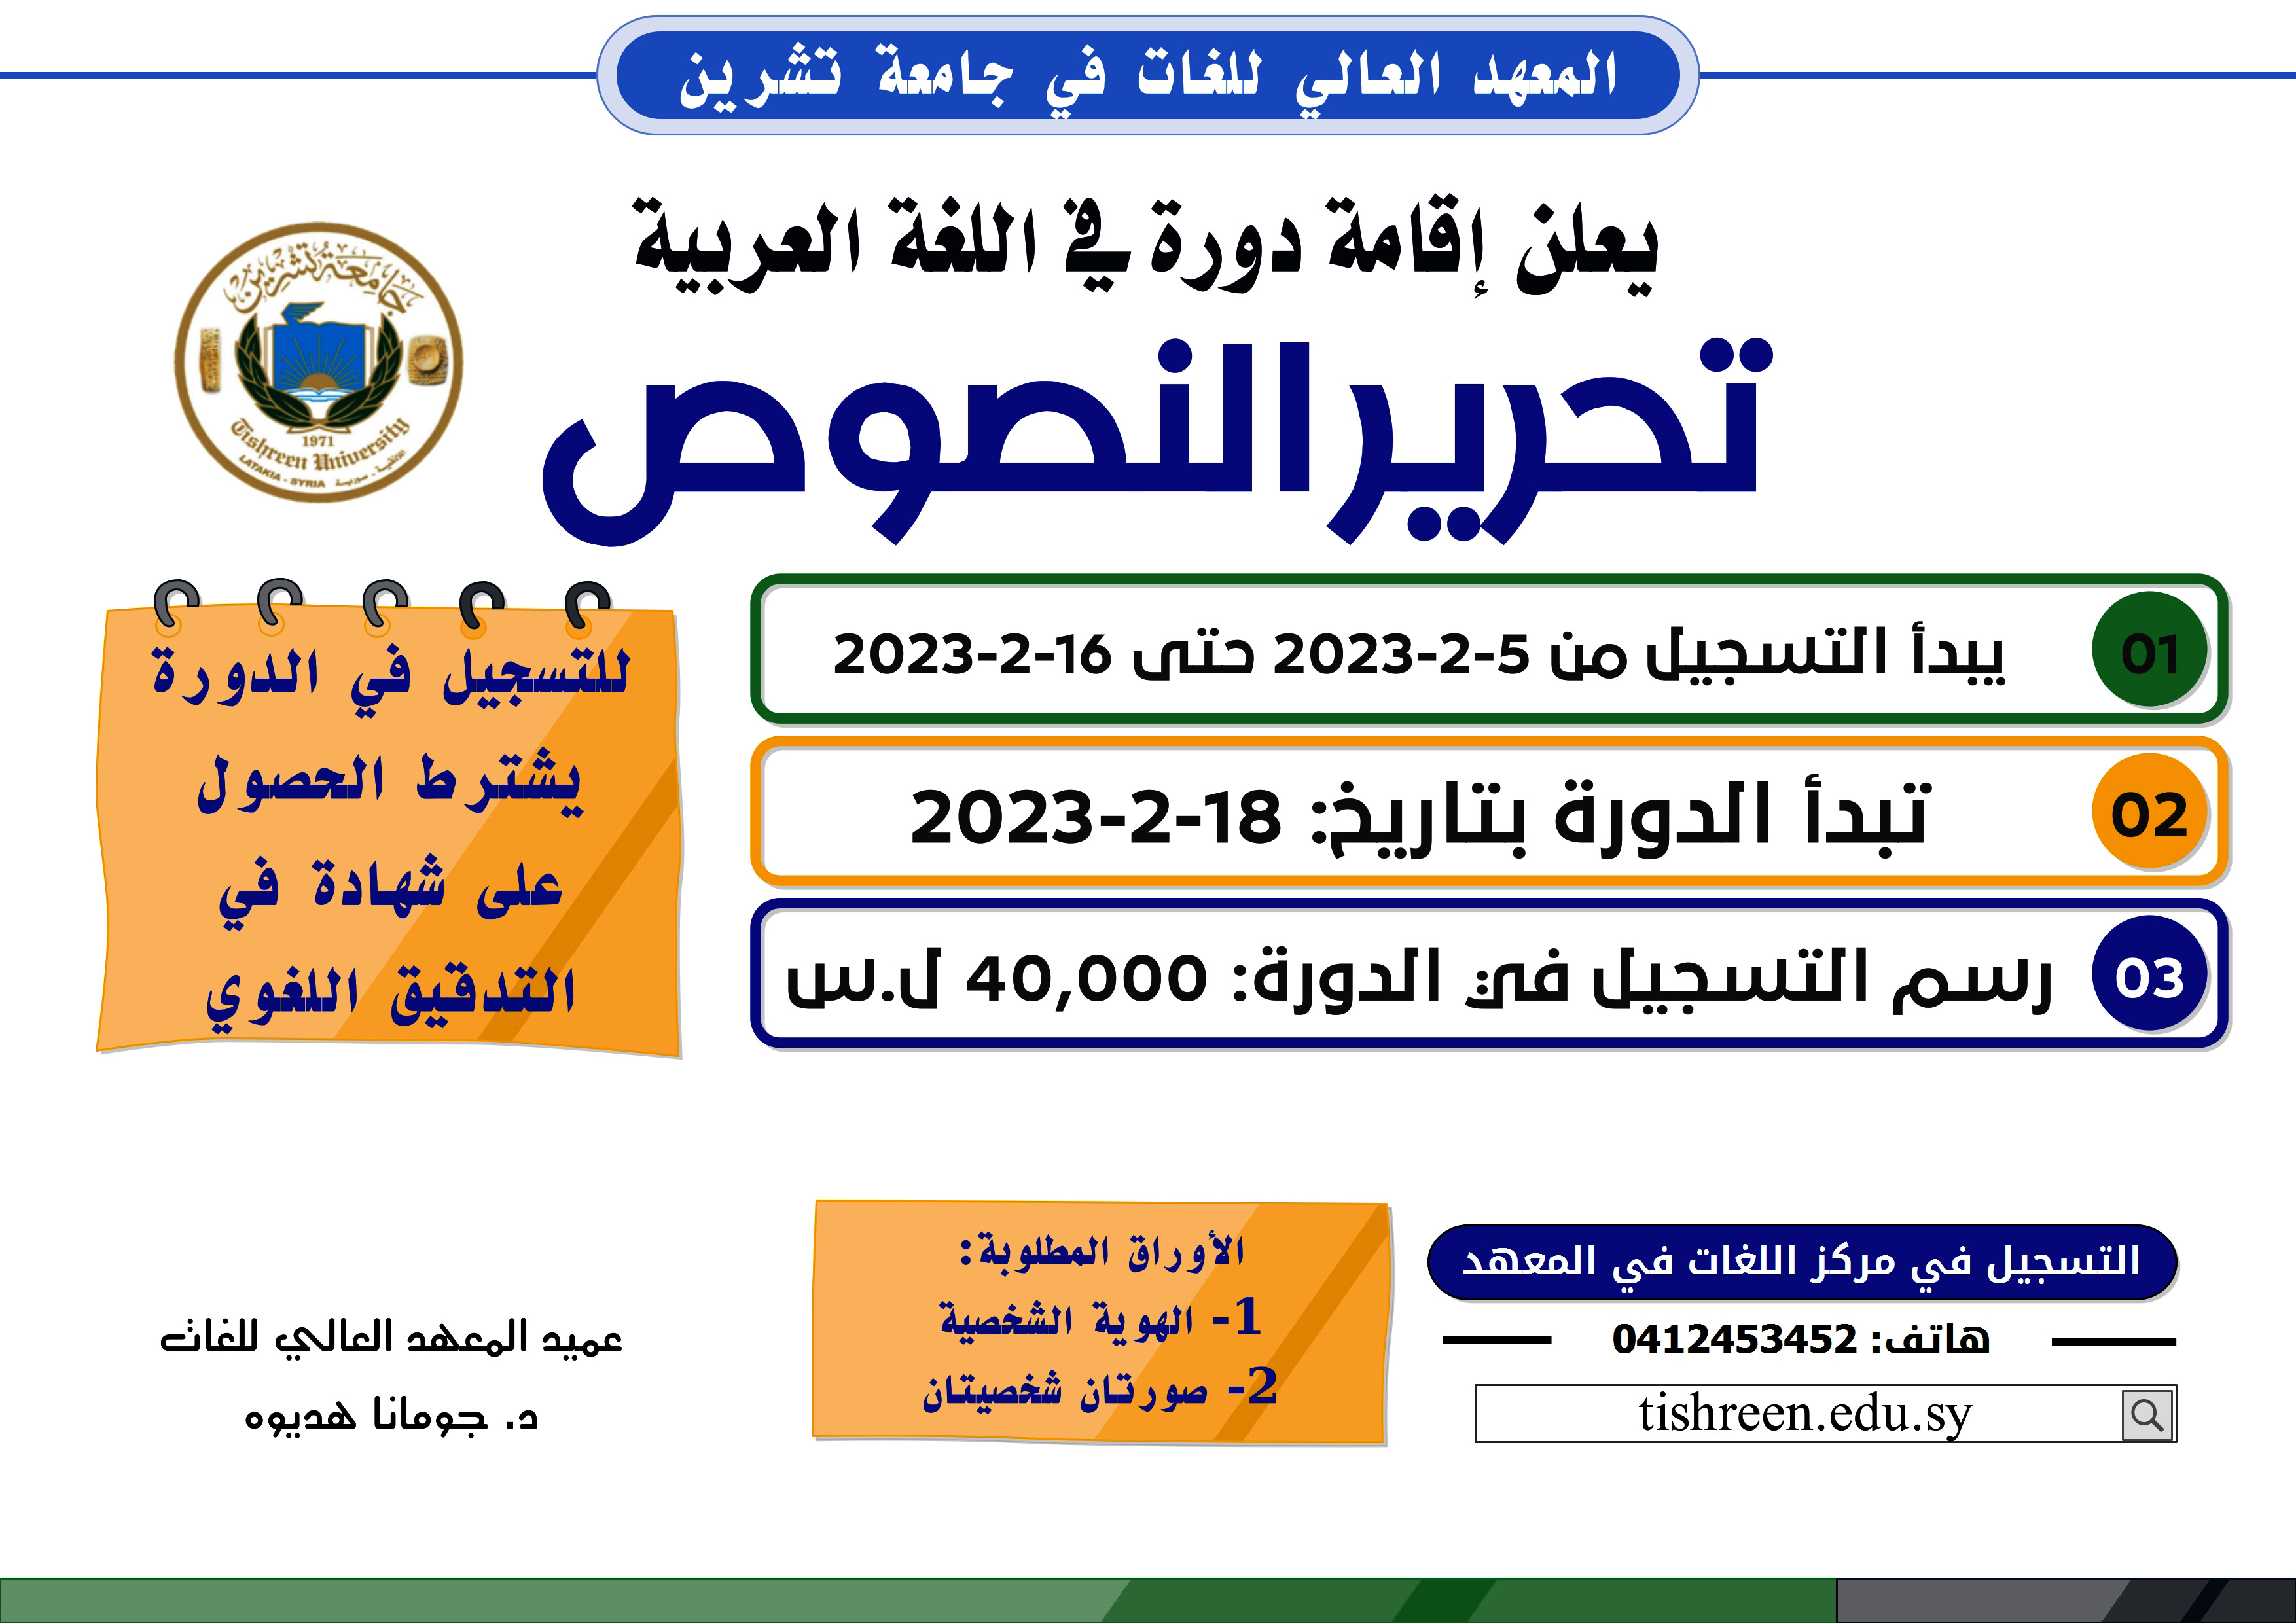 المعهد العالي للغات يعلن إقامة دورة تحرير النصوص في اللغة العربية تبدء بتاريخ 18-2-2023